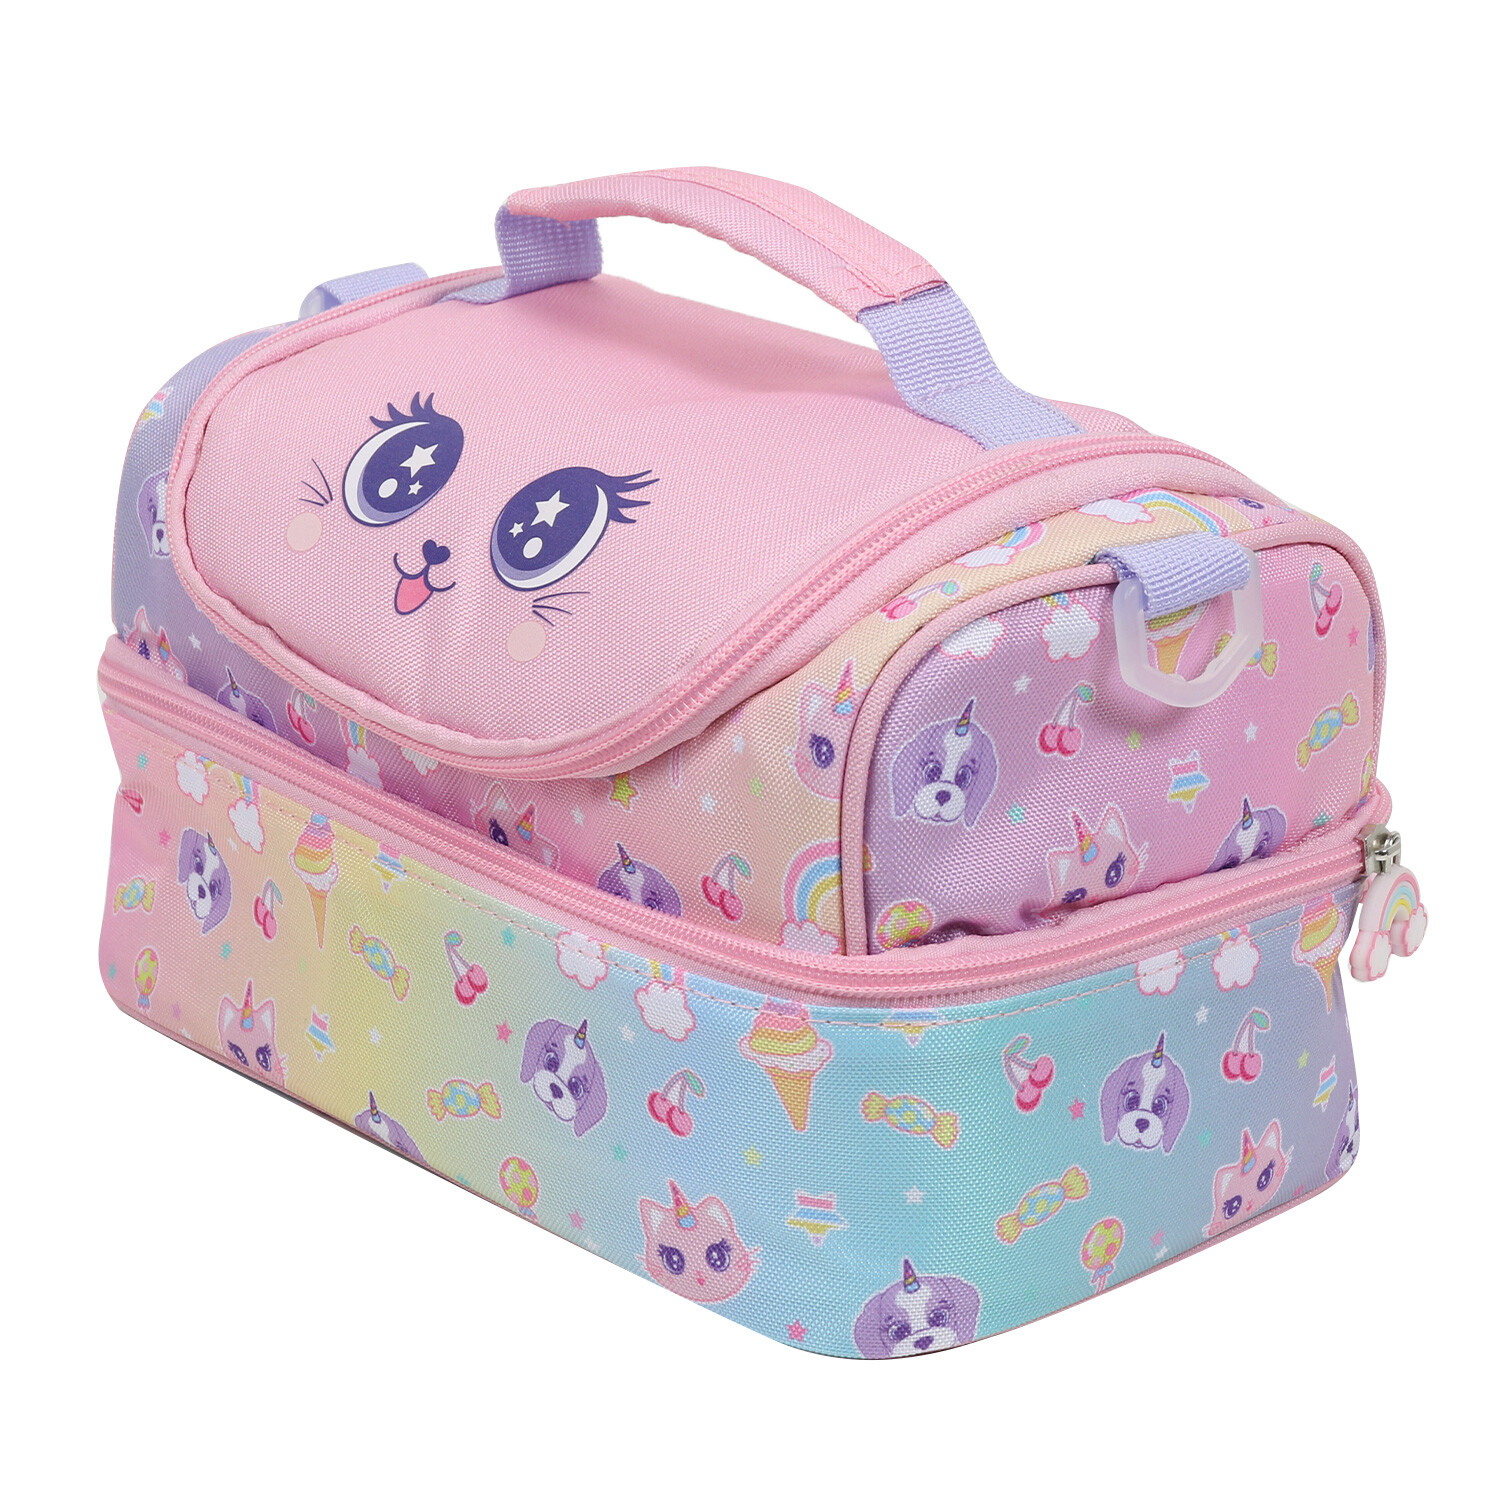 i-doodle Pet Pals Lunch Bag - Pink Image 2